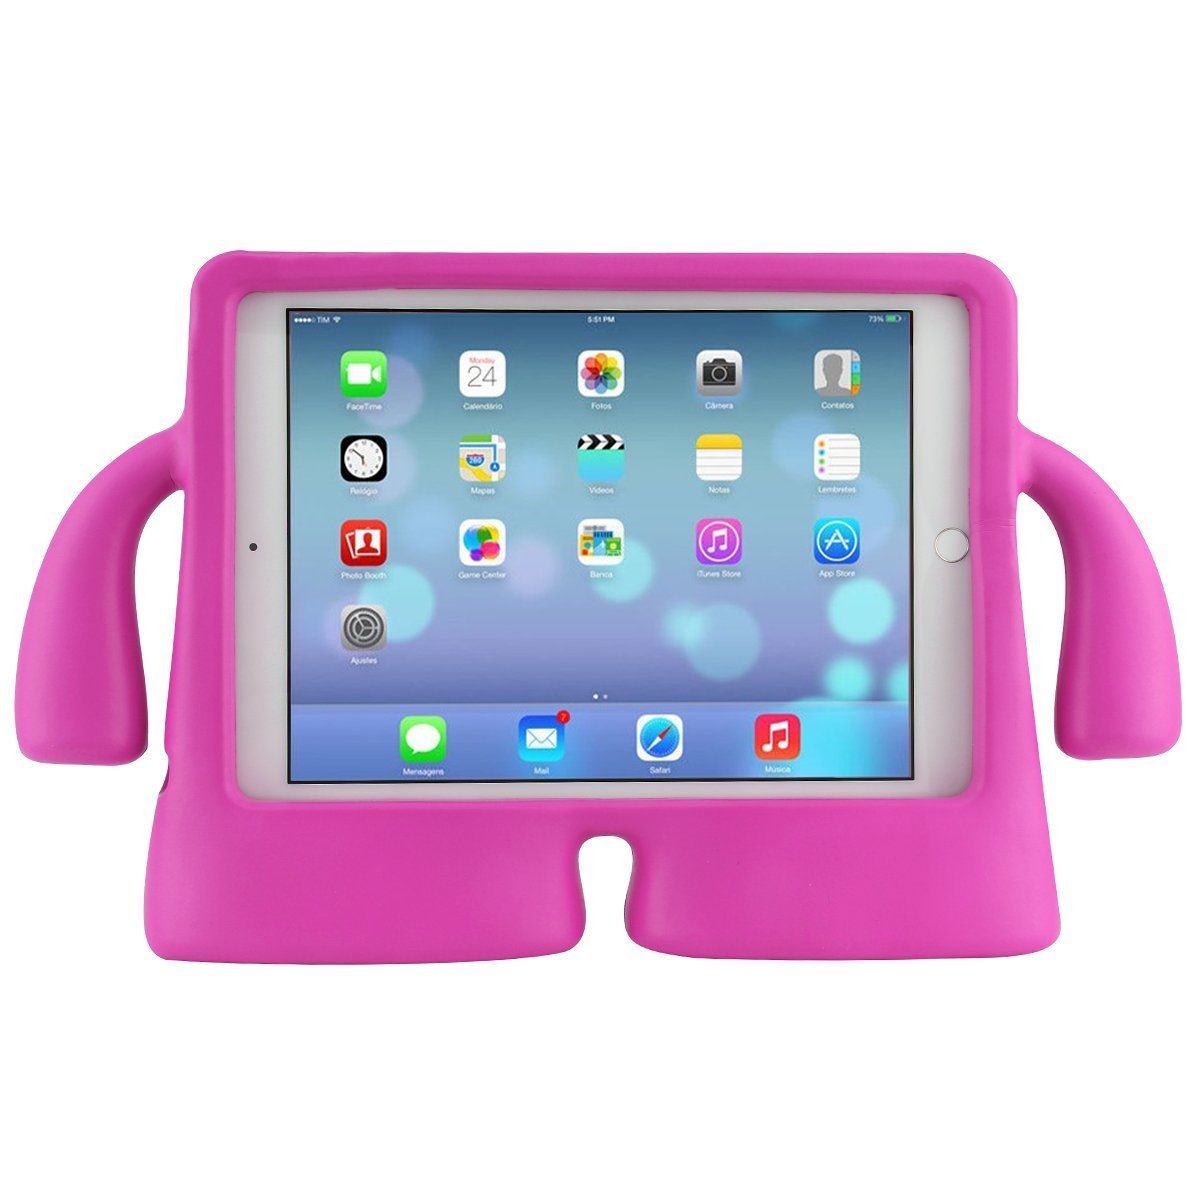 Купить новый планшет в спб. Детский планшет cсit kt300 Pro. Детский планшет ДНС розовый. Детский планшет ДНС. Планшет детский вайлдберриз.